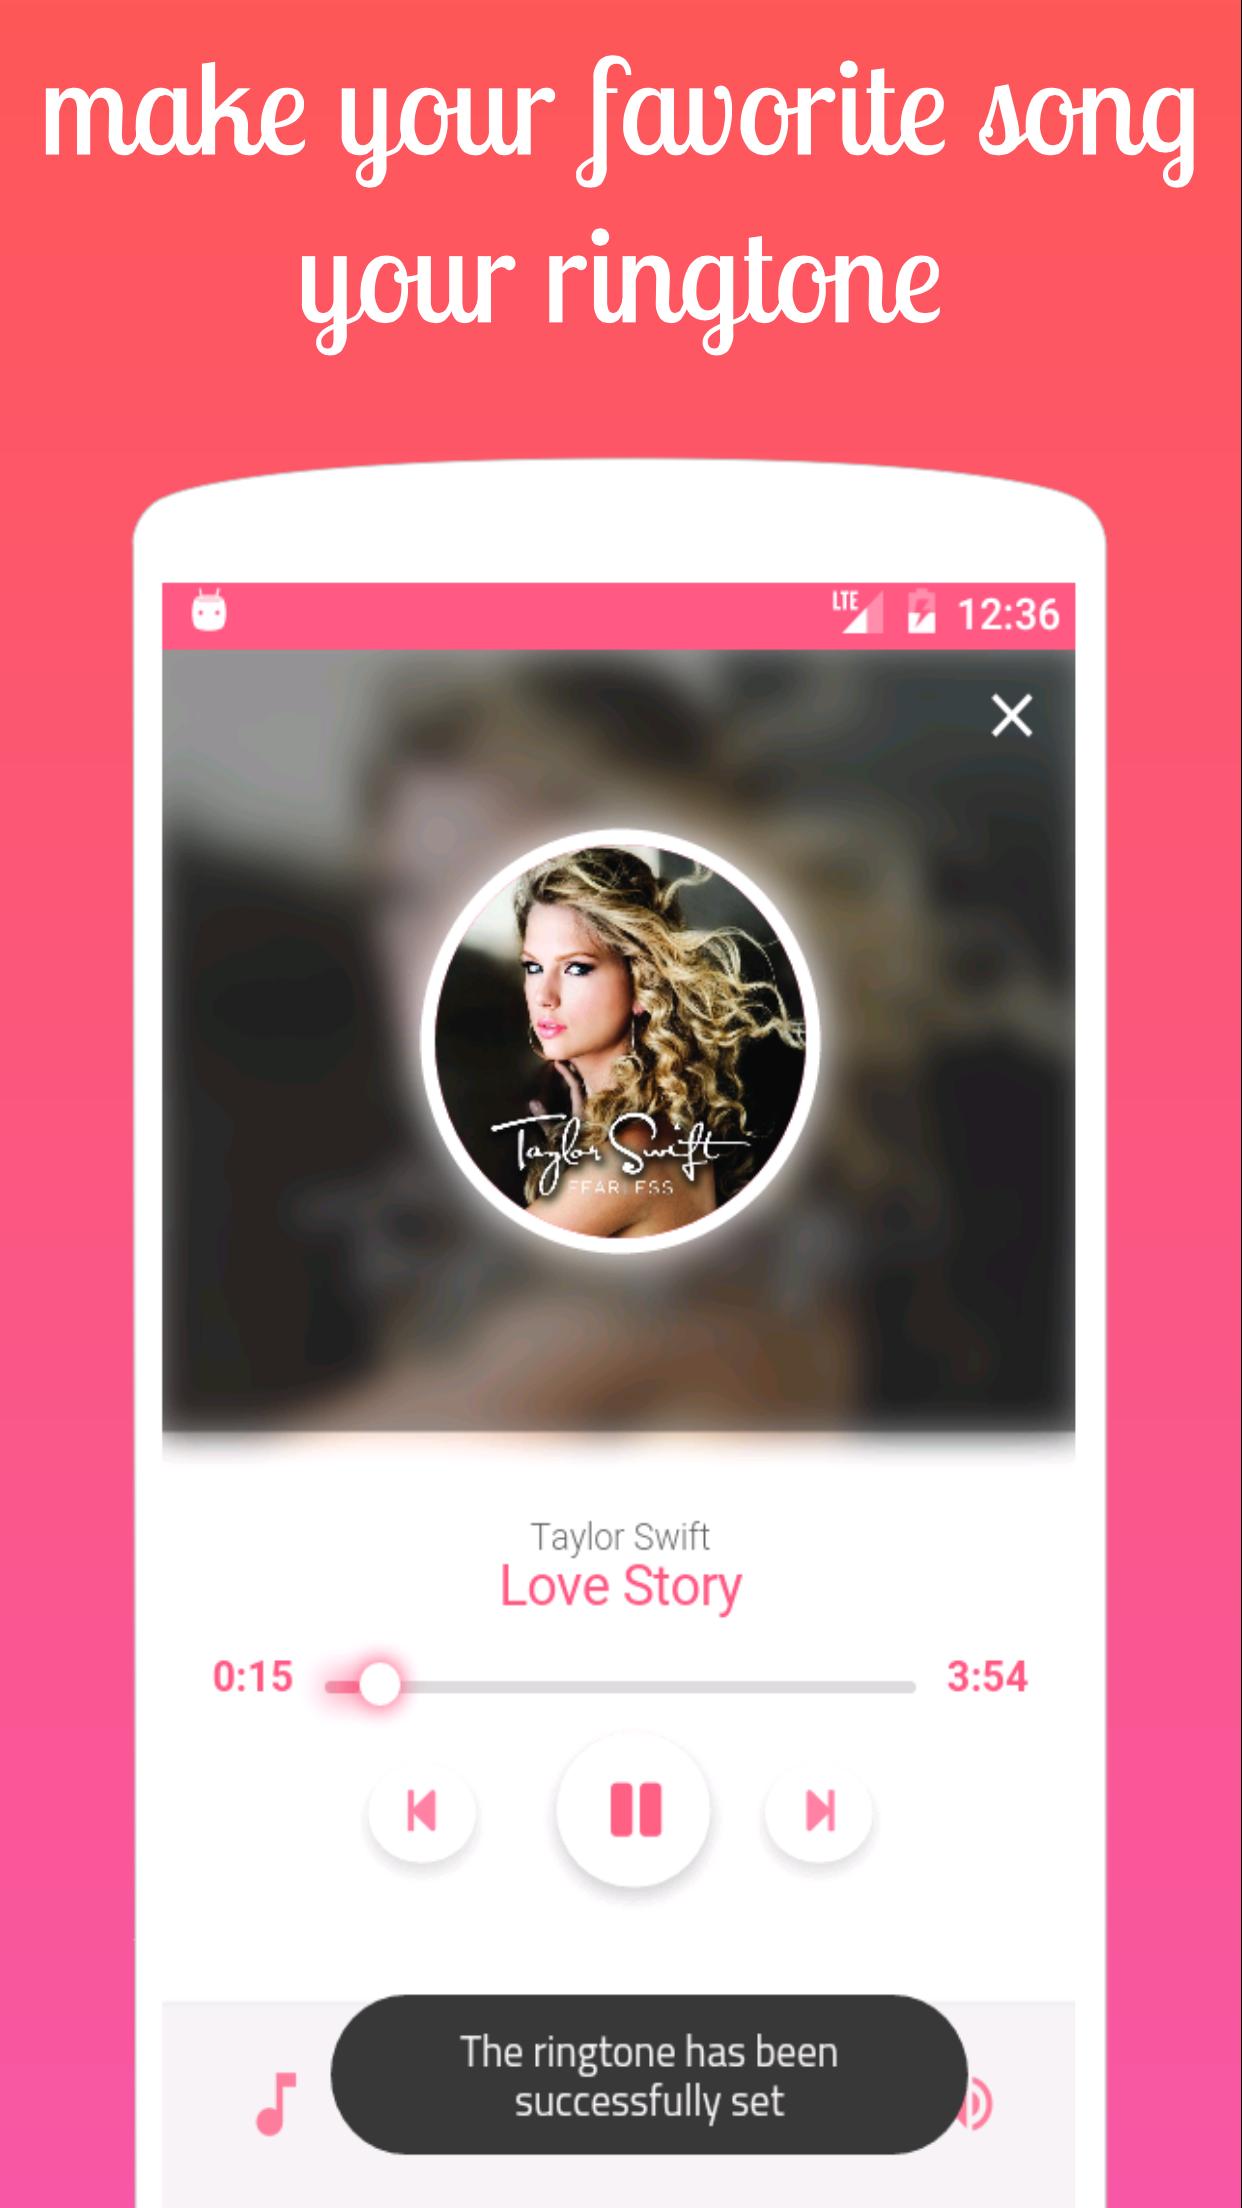 أغاني تايلور سويفت بدون أنترنت Taylor Swift For Android Apk